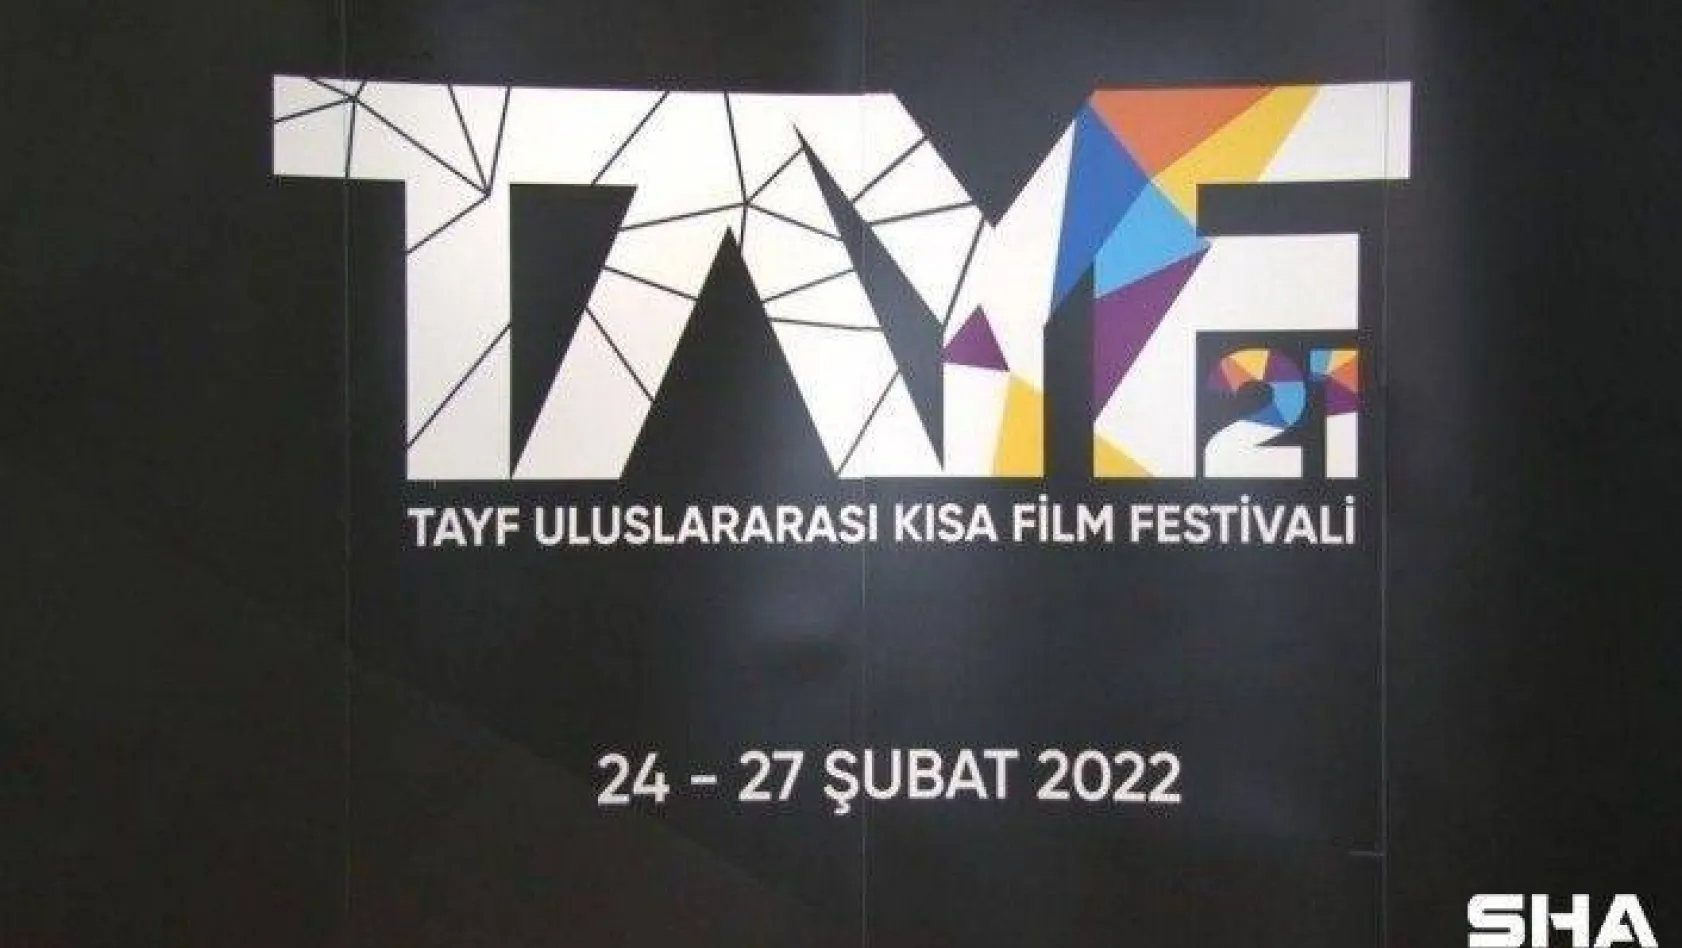 Tayf Uluslararası Kısa Film Festivali başlıyor